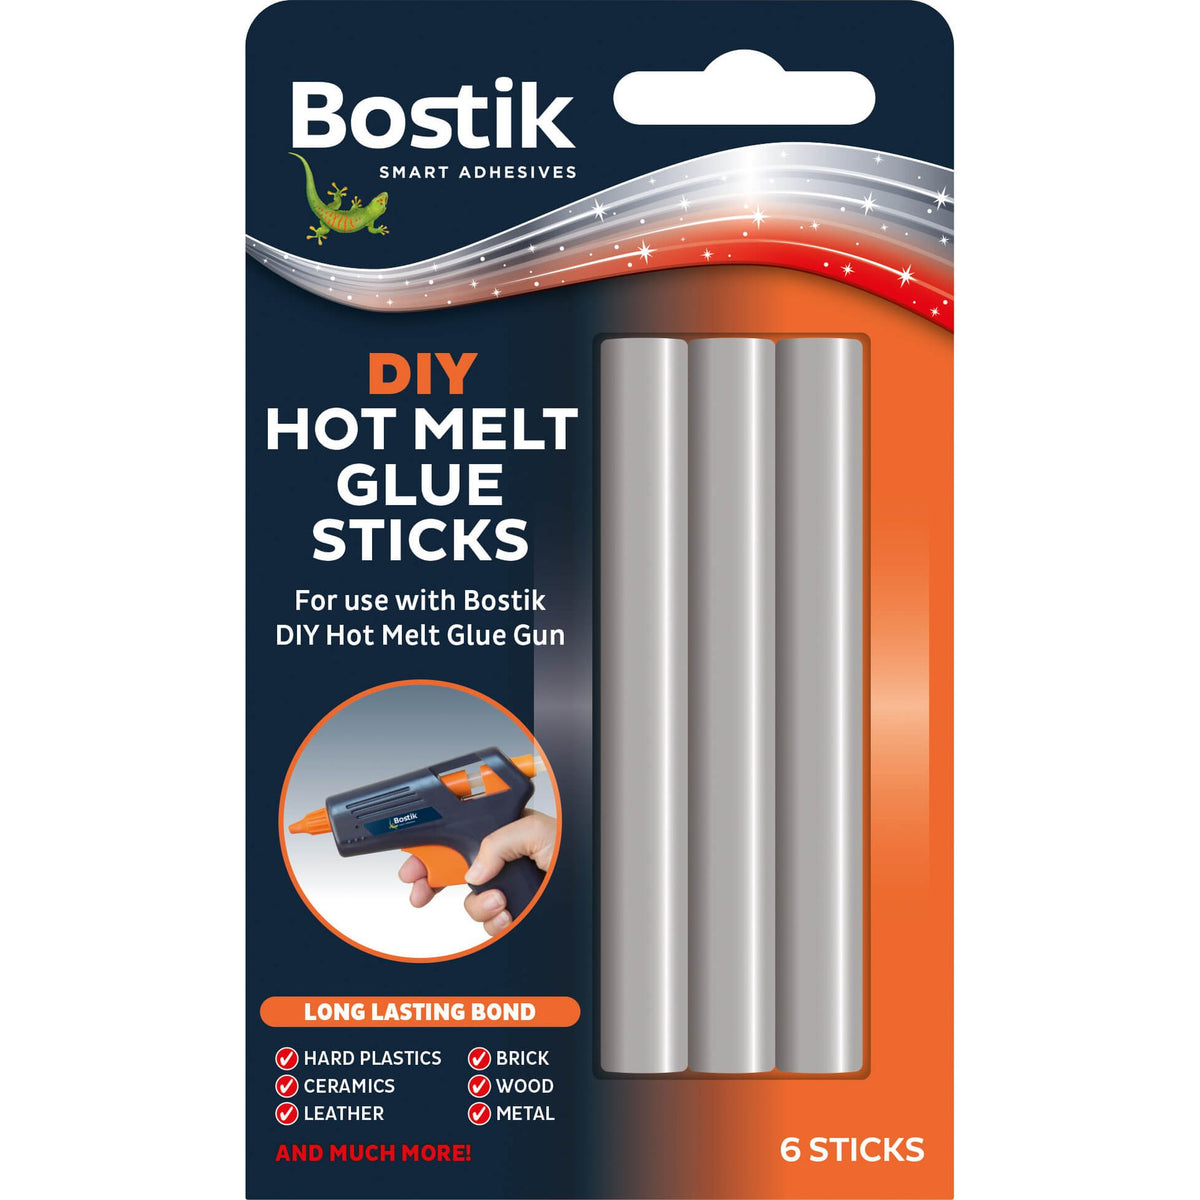 Bostik Hot Melt DIY Glue Gun Sticks